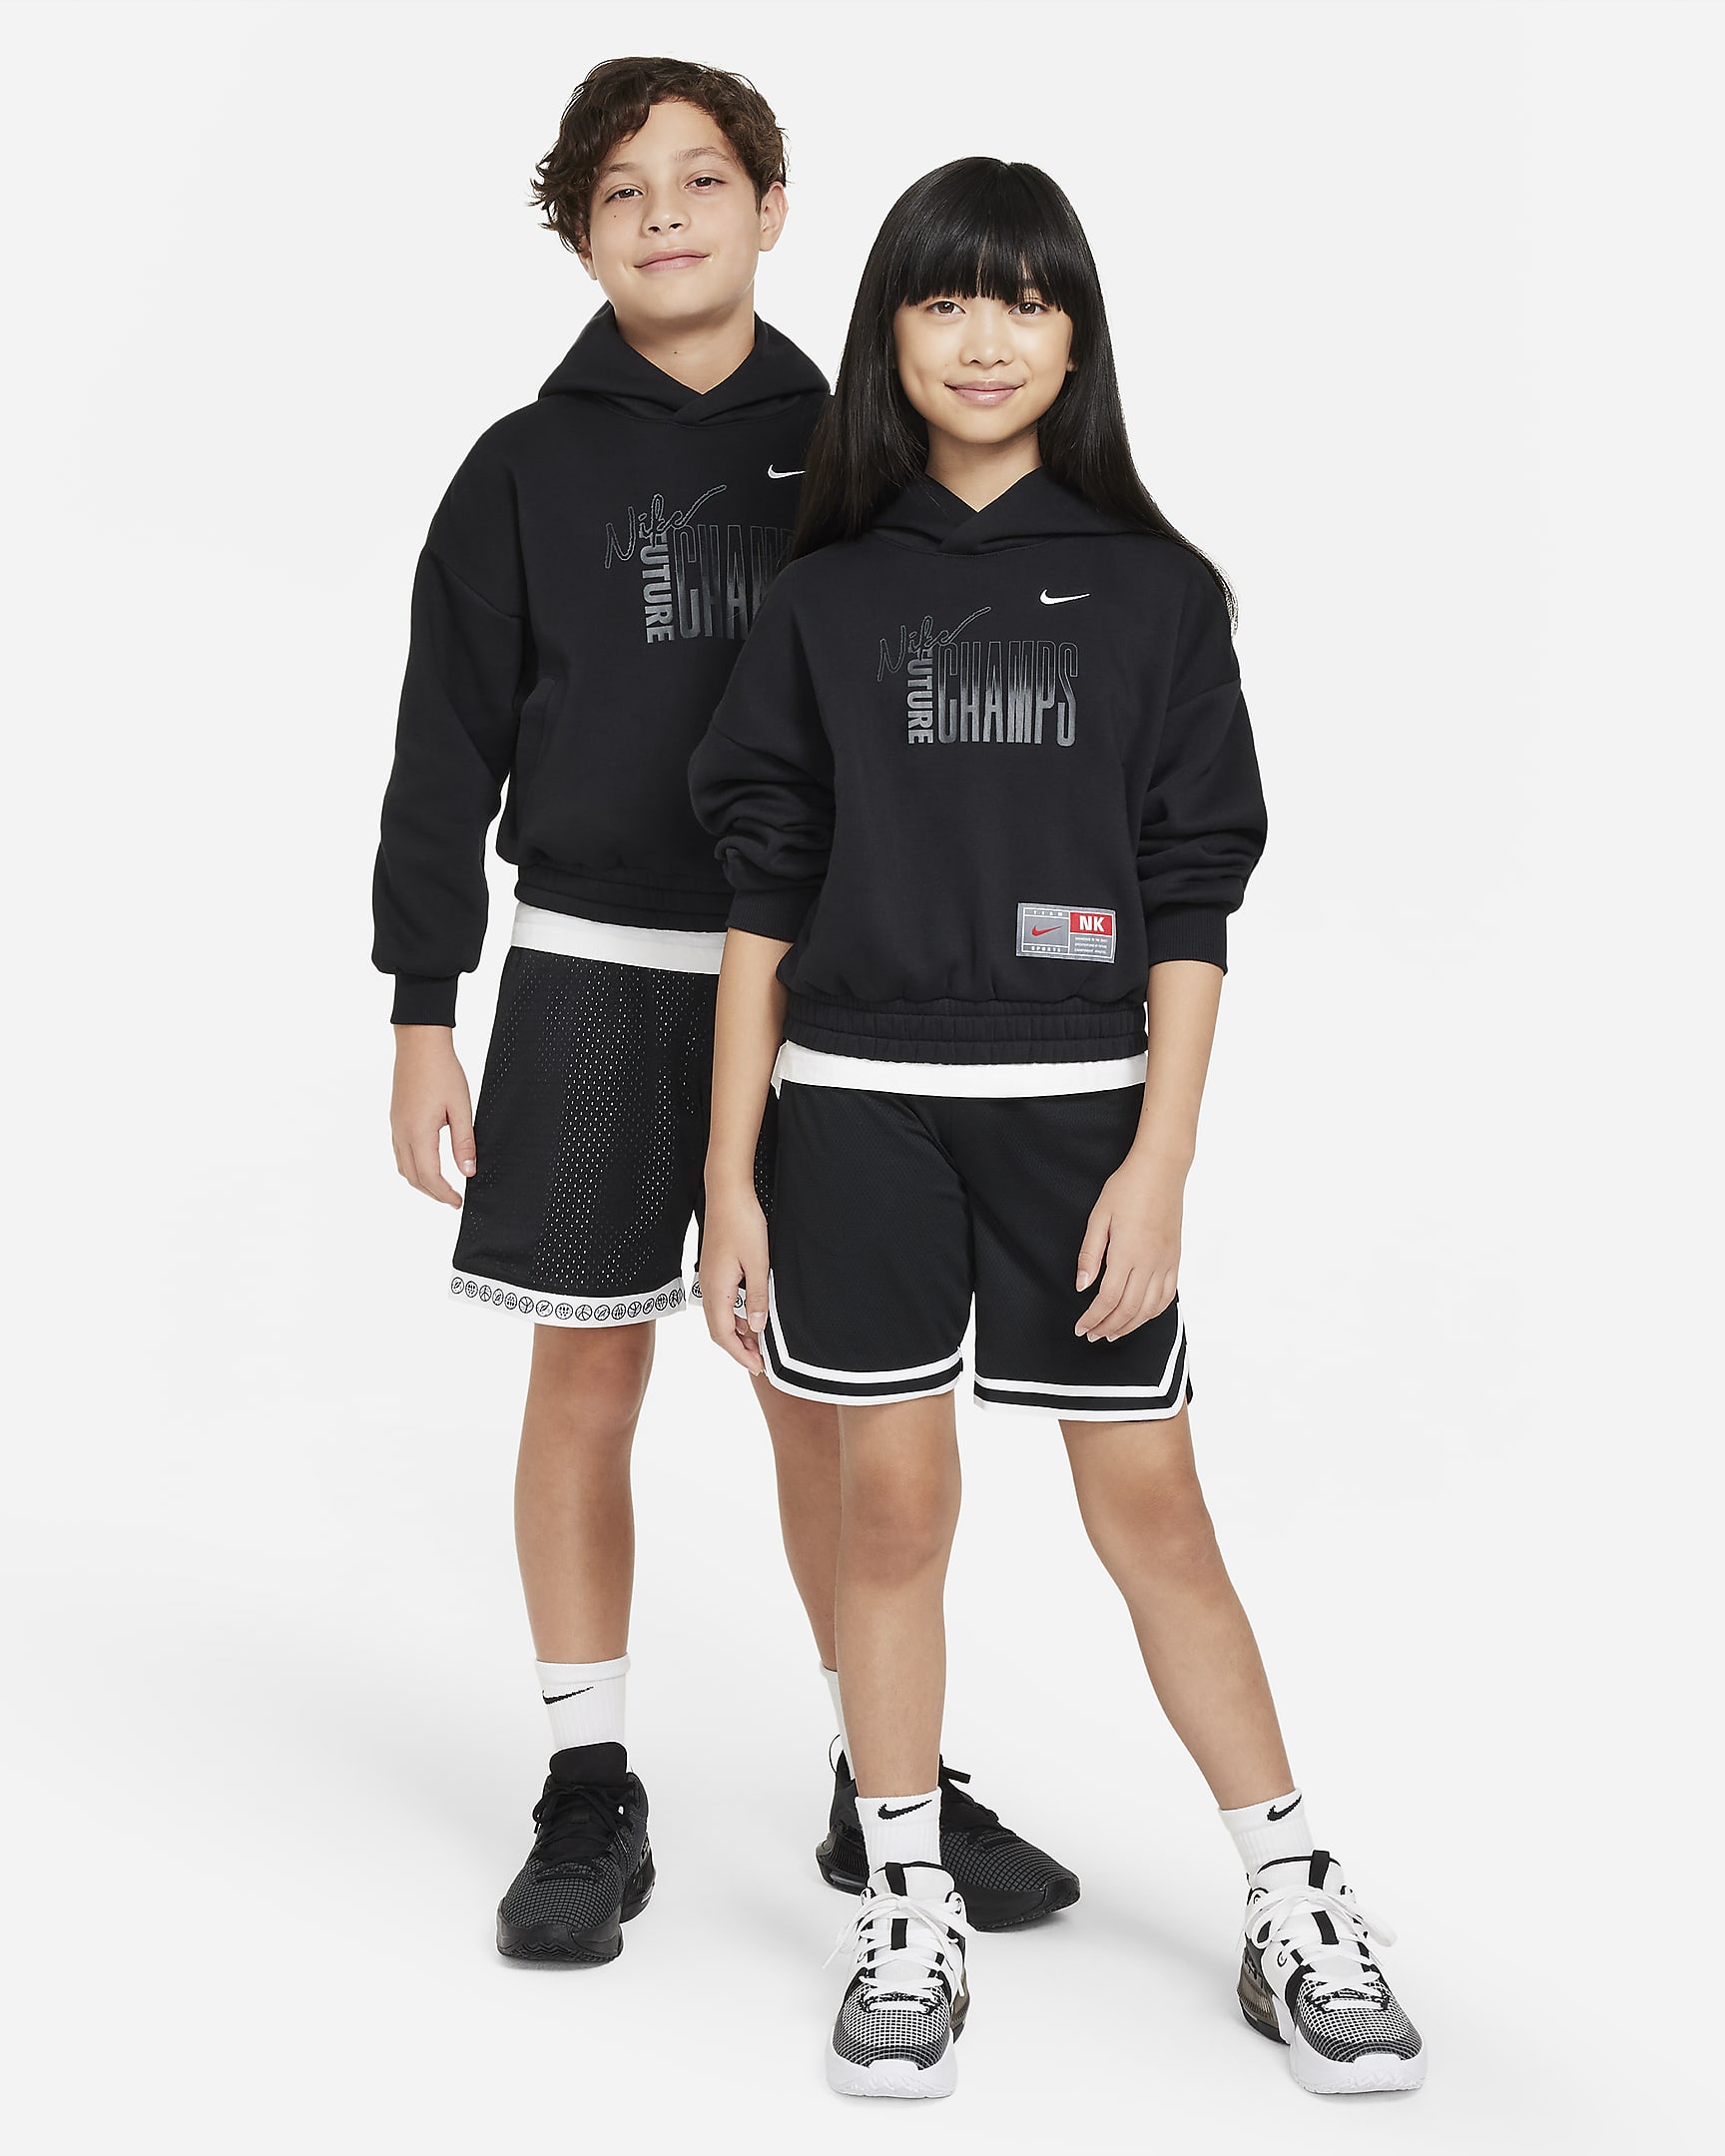 Nike Culture of Basketball Older Kids' Pullover Fleece Hoodie. Nike UK